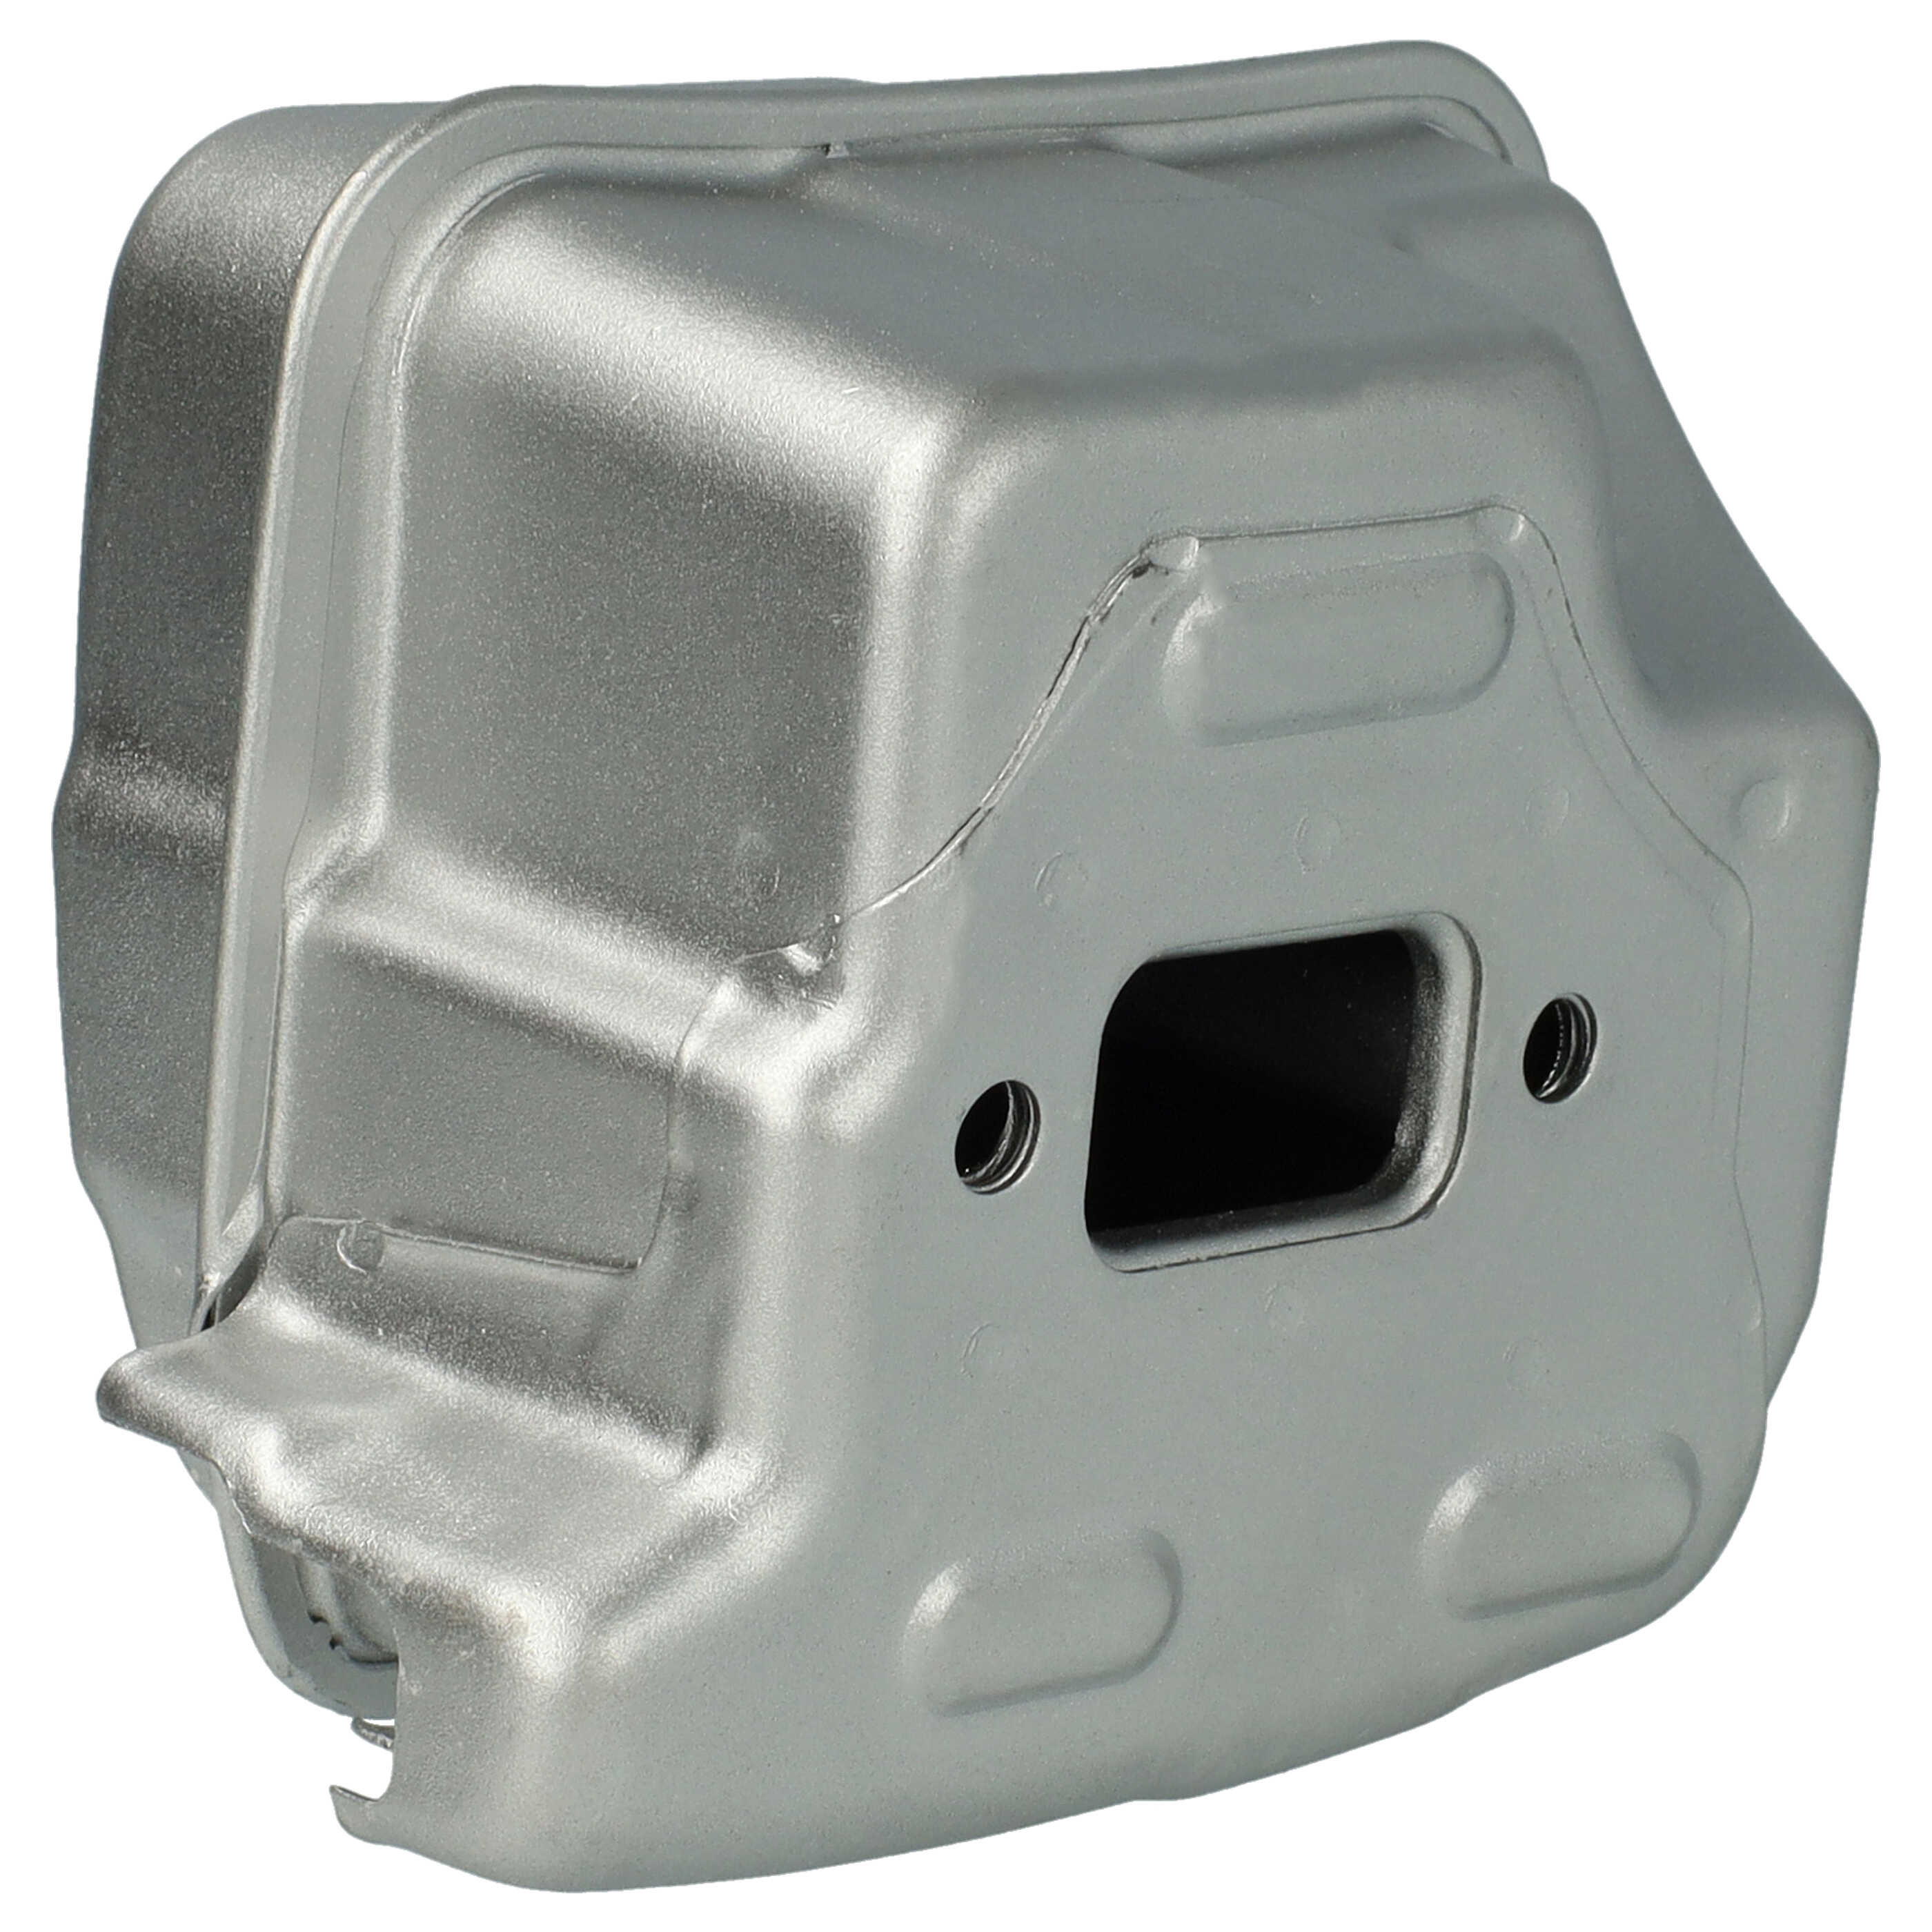 Auspuff-Schalldämpfer als Ersatz für Stihl 1143 140 0661 für Stihl Motorsäge - 11 x 8,4 x 6,5 cm